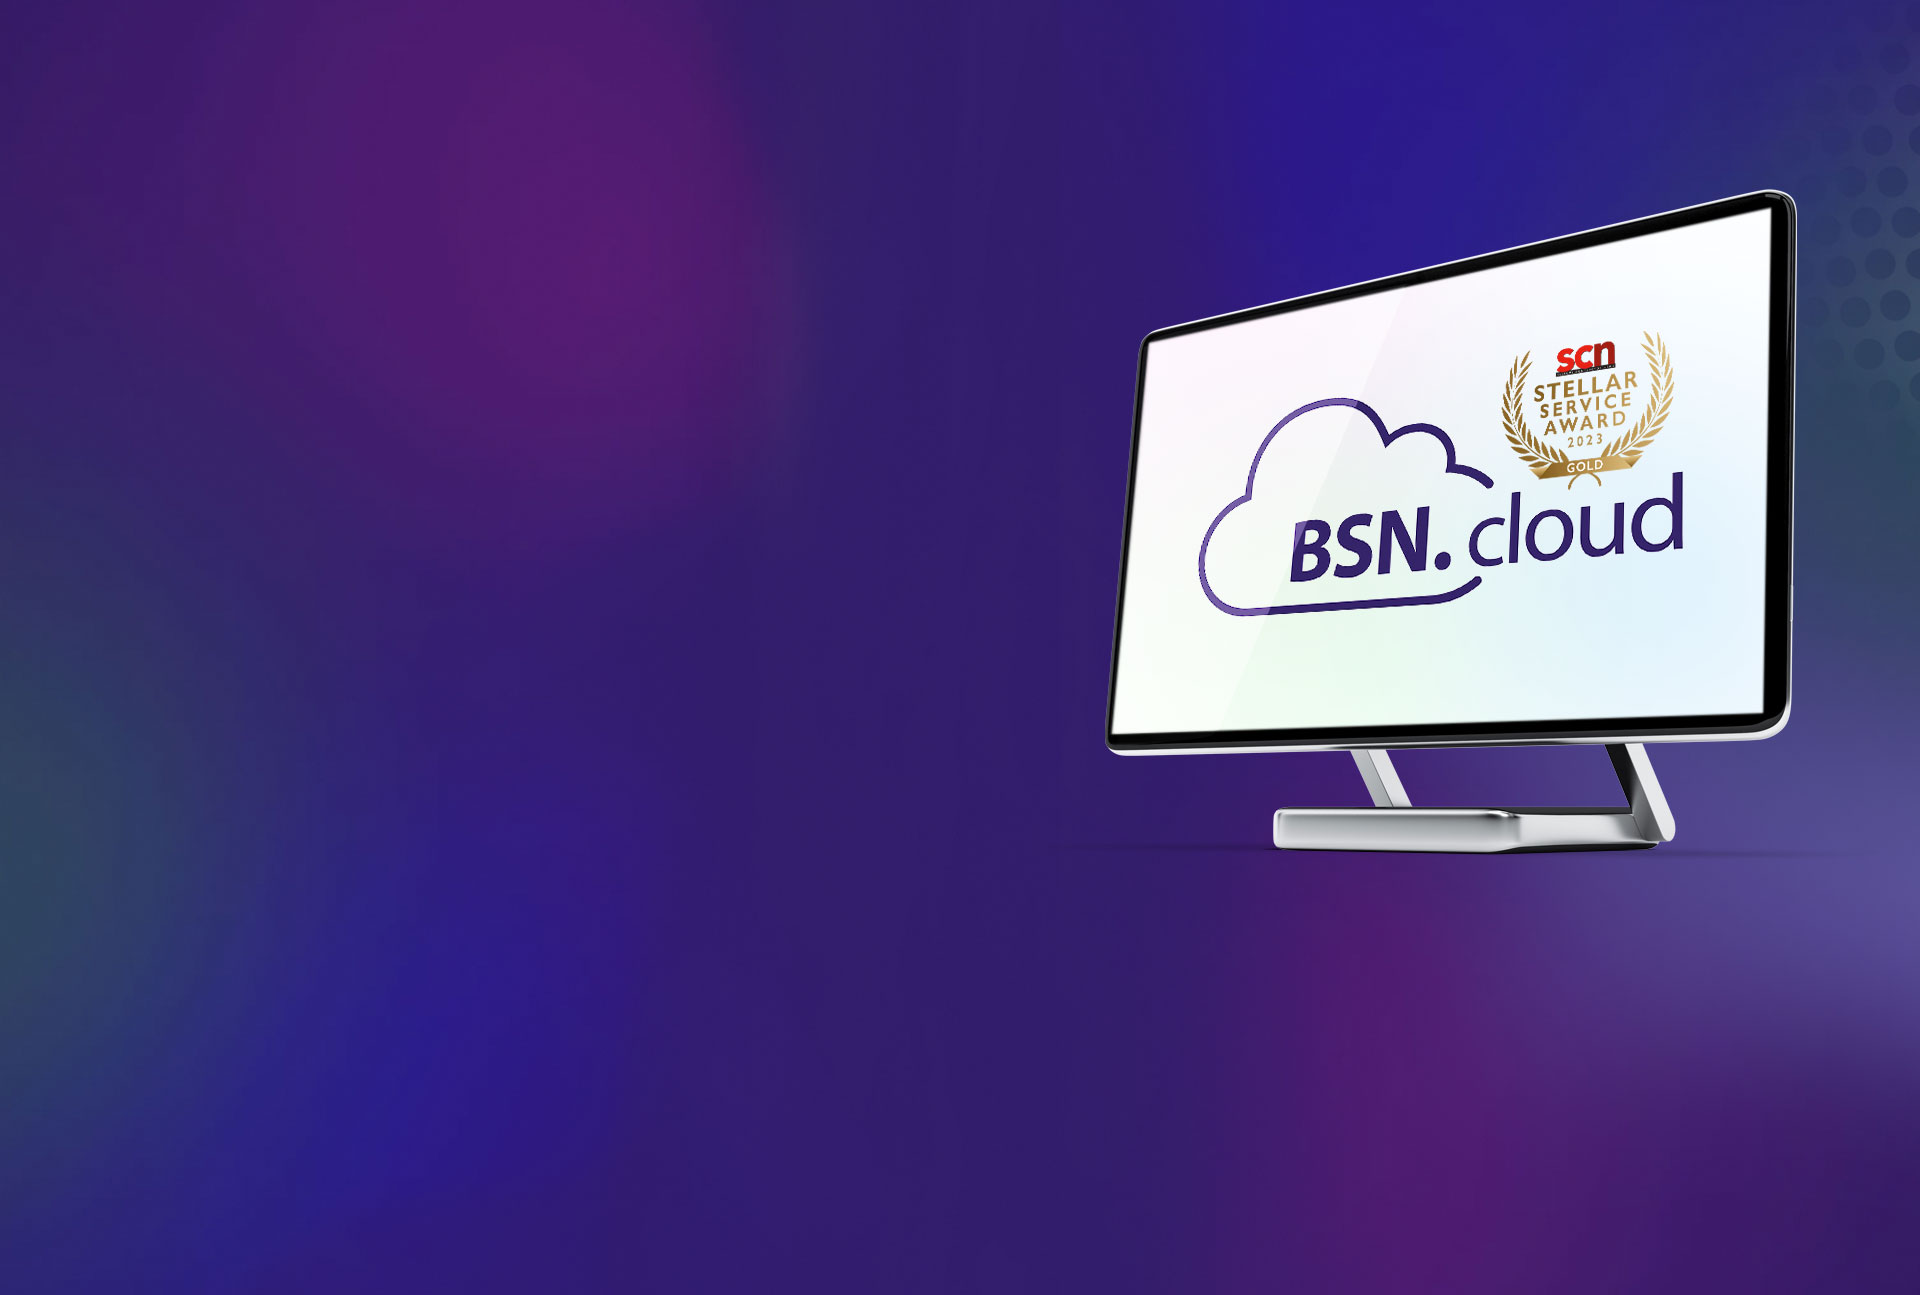 hero image of monitor displaying BSN.cloud logo